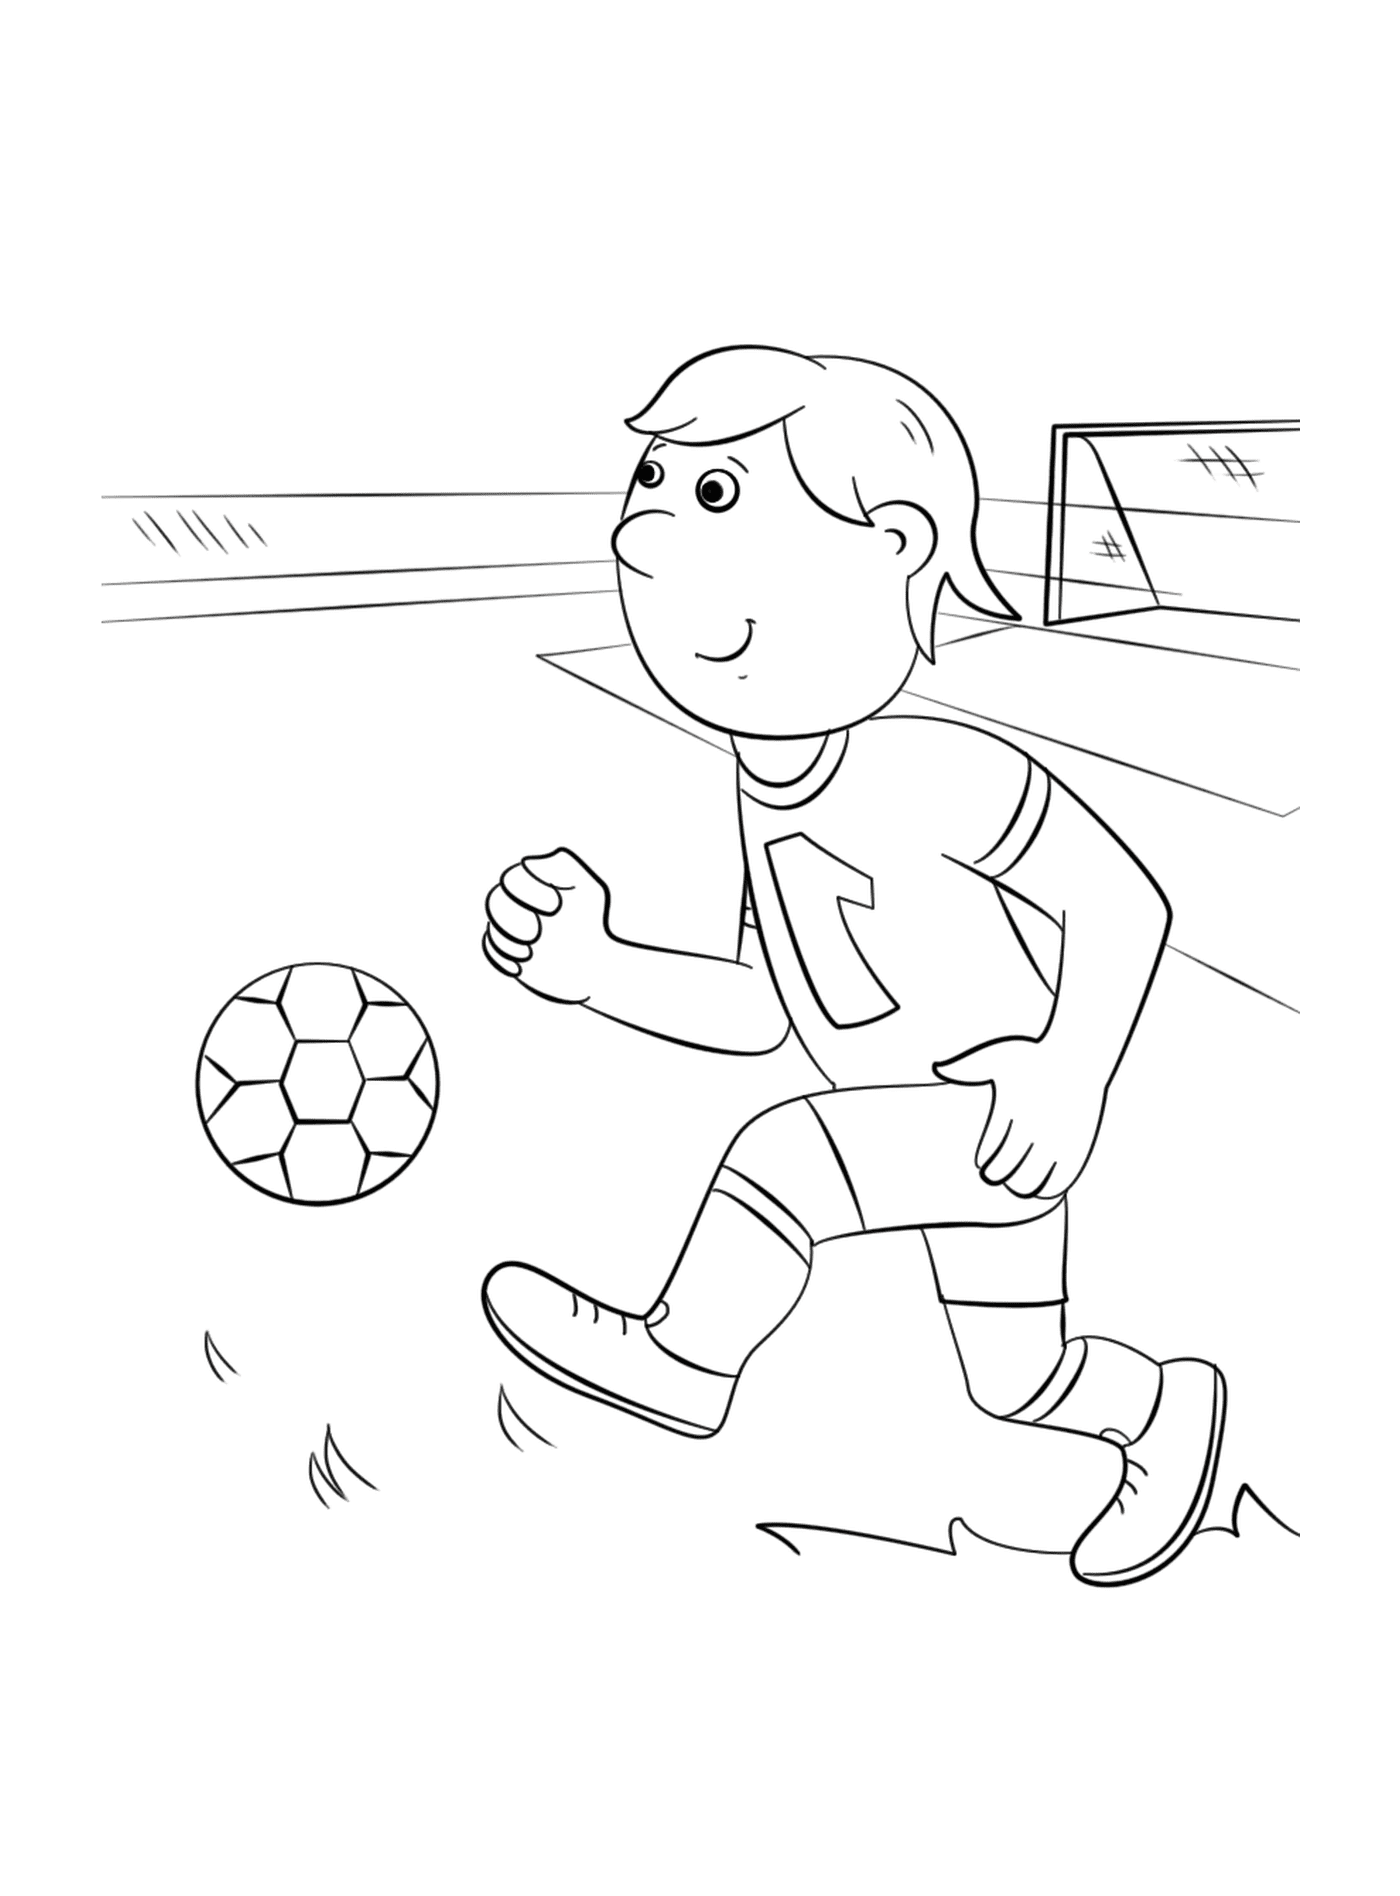  Ein Junge spielt Fußball 